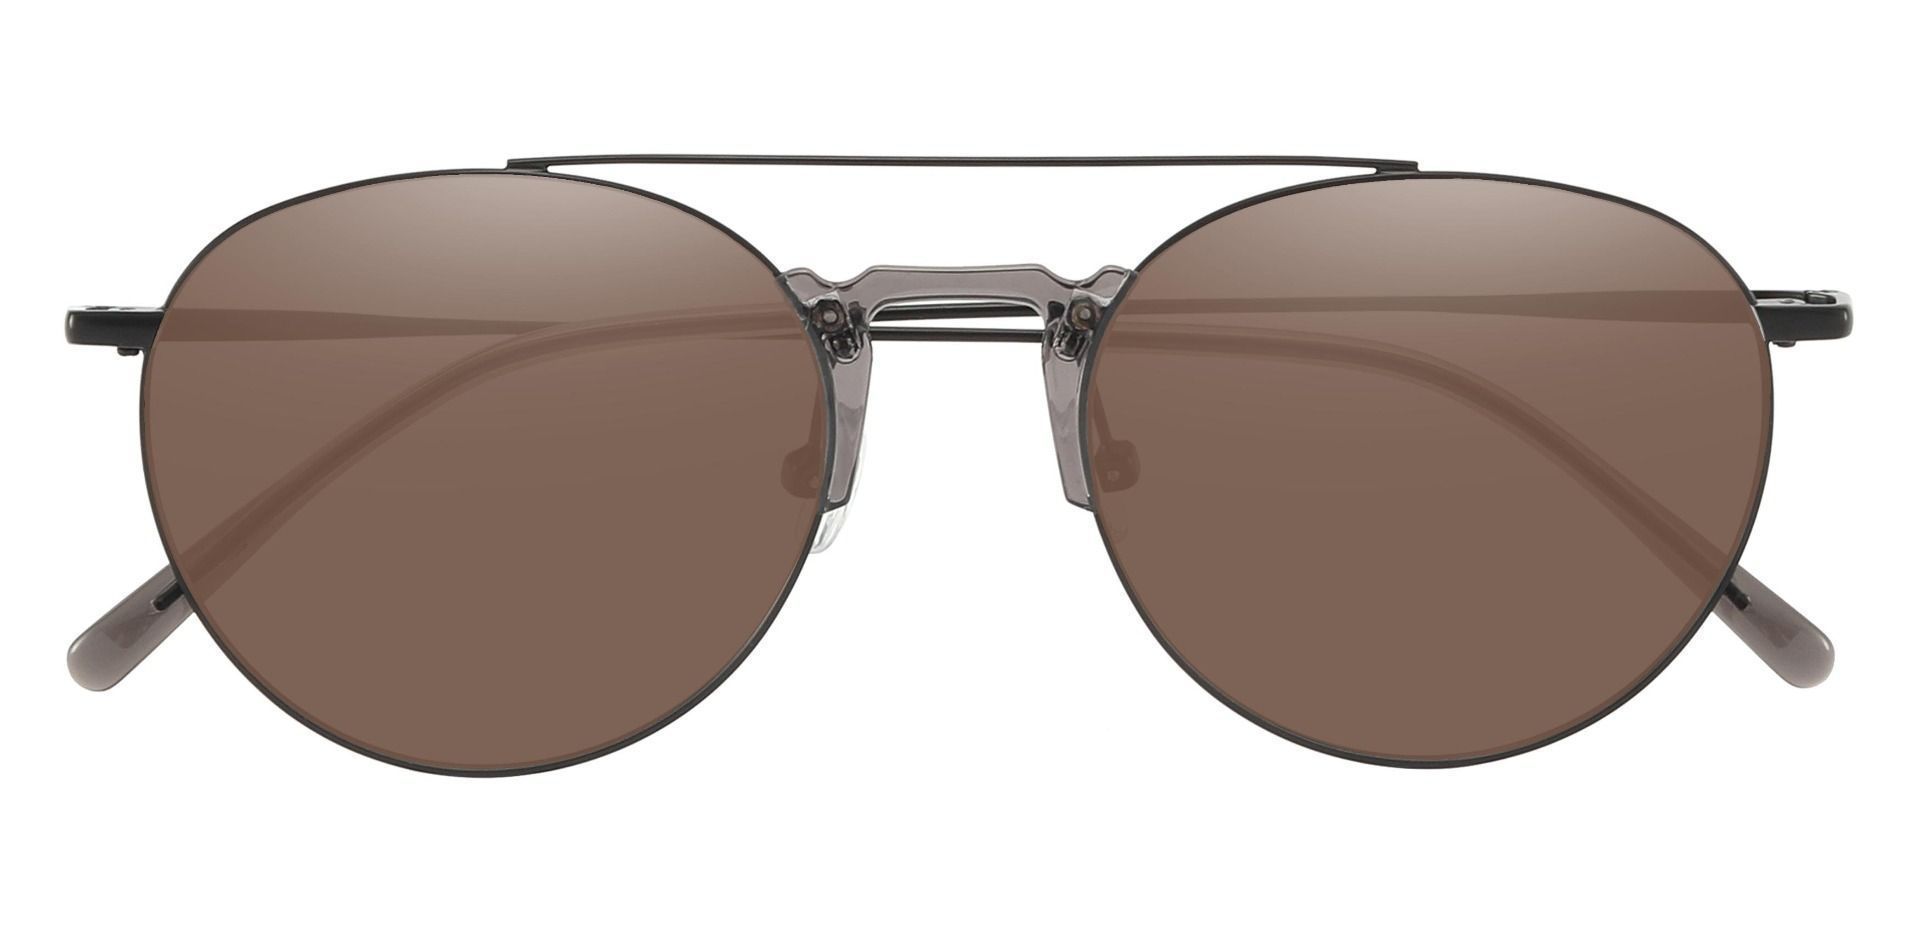 Ludden Aviator Progressive Sunglasses - Black Frame With Brown Lenses